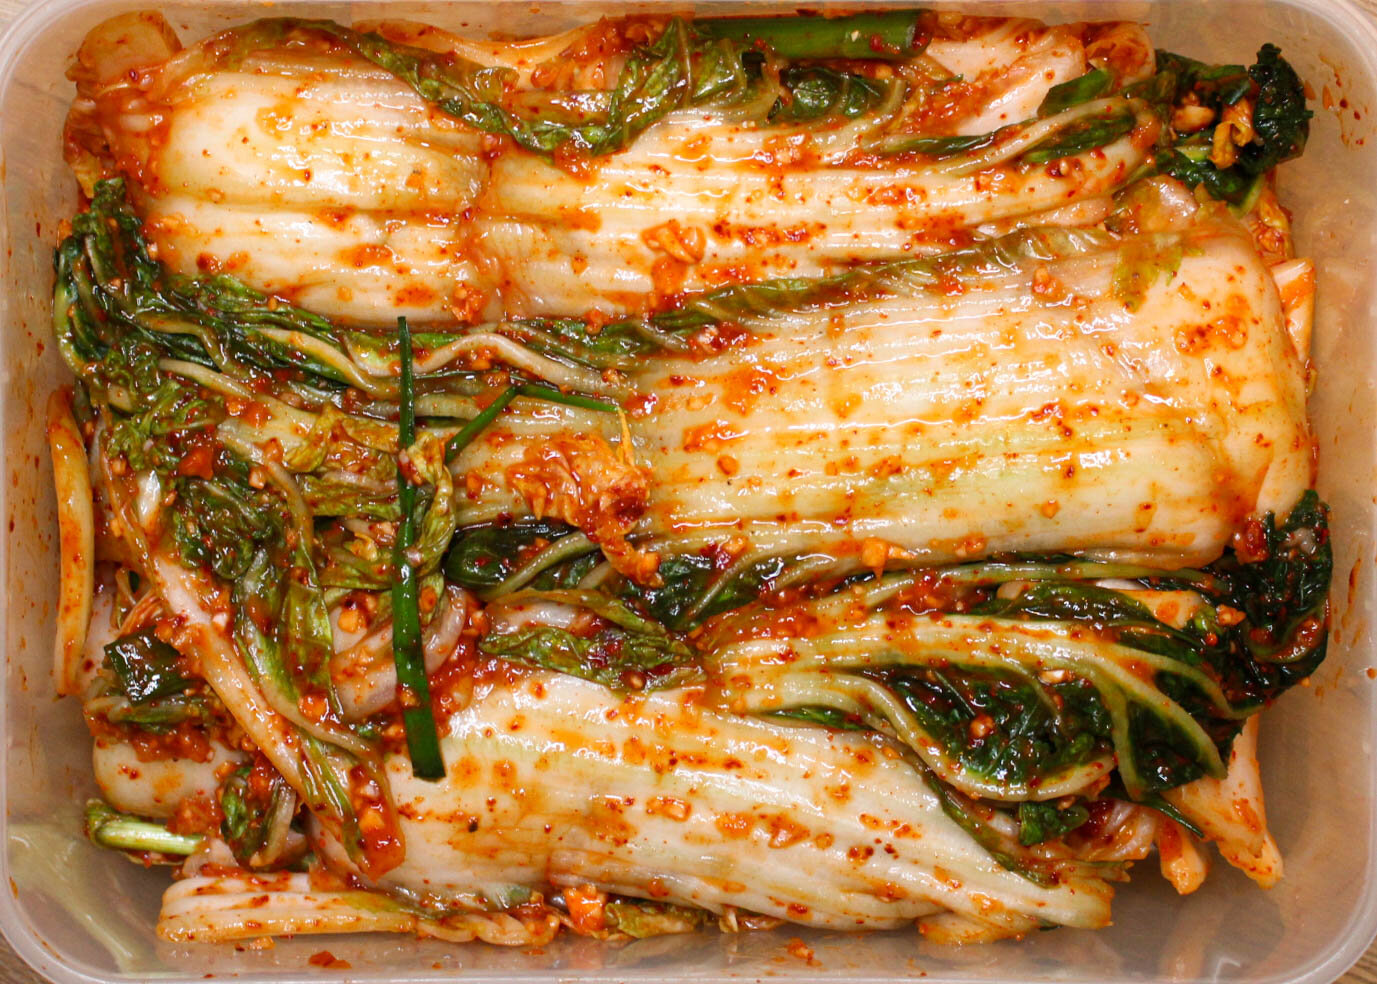 Traditional Kimchi Recipe - Korean Bapsang